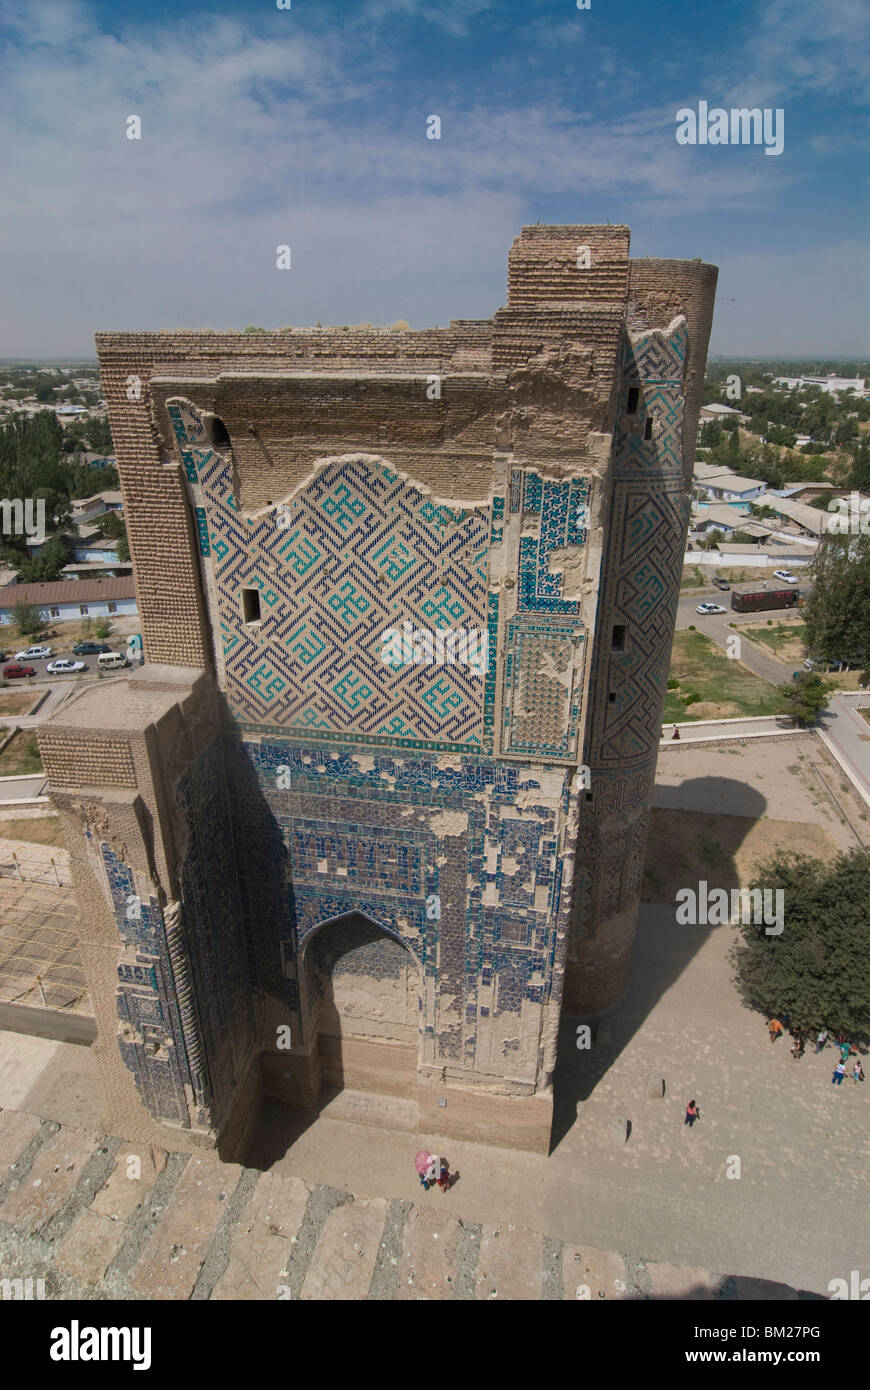 Ak-Sarai Palace, Timur's Summer Palace, Shakhrisyabz, Uzbekistan, Central Asia Stock Photo